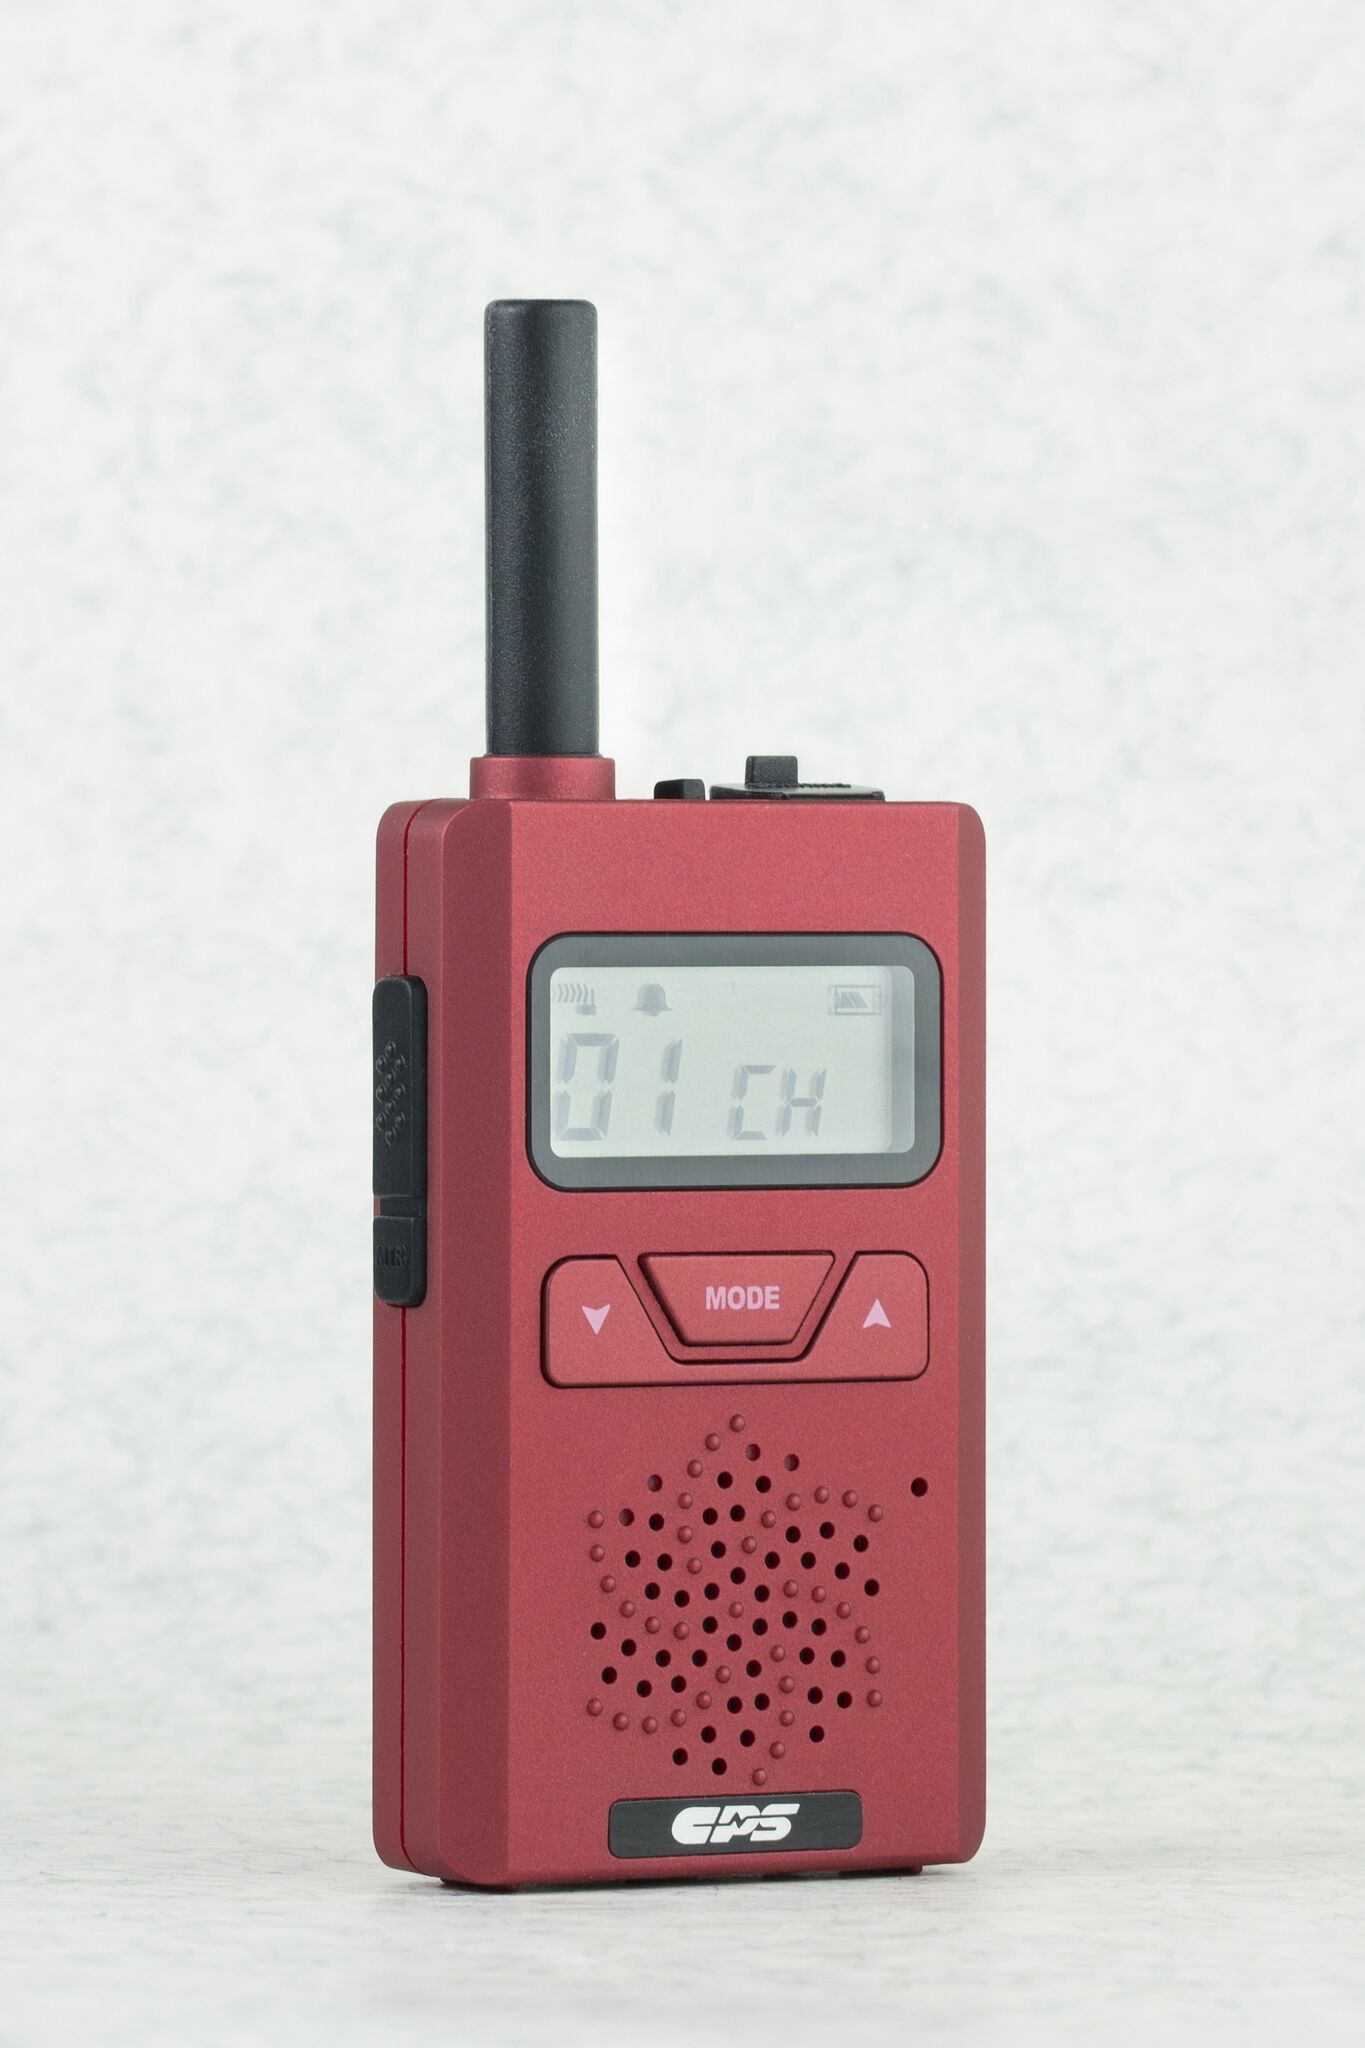 CP183 Lightweight PMR446 Walkie Talkie Radio